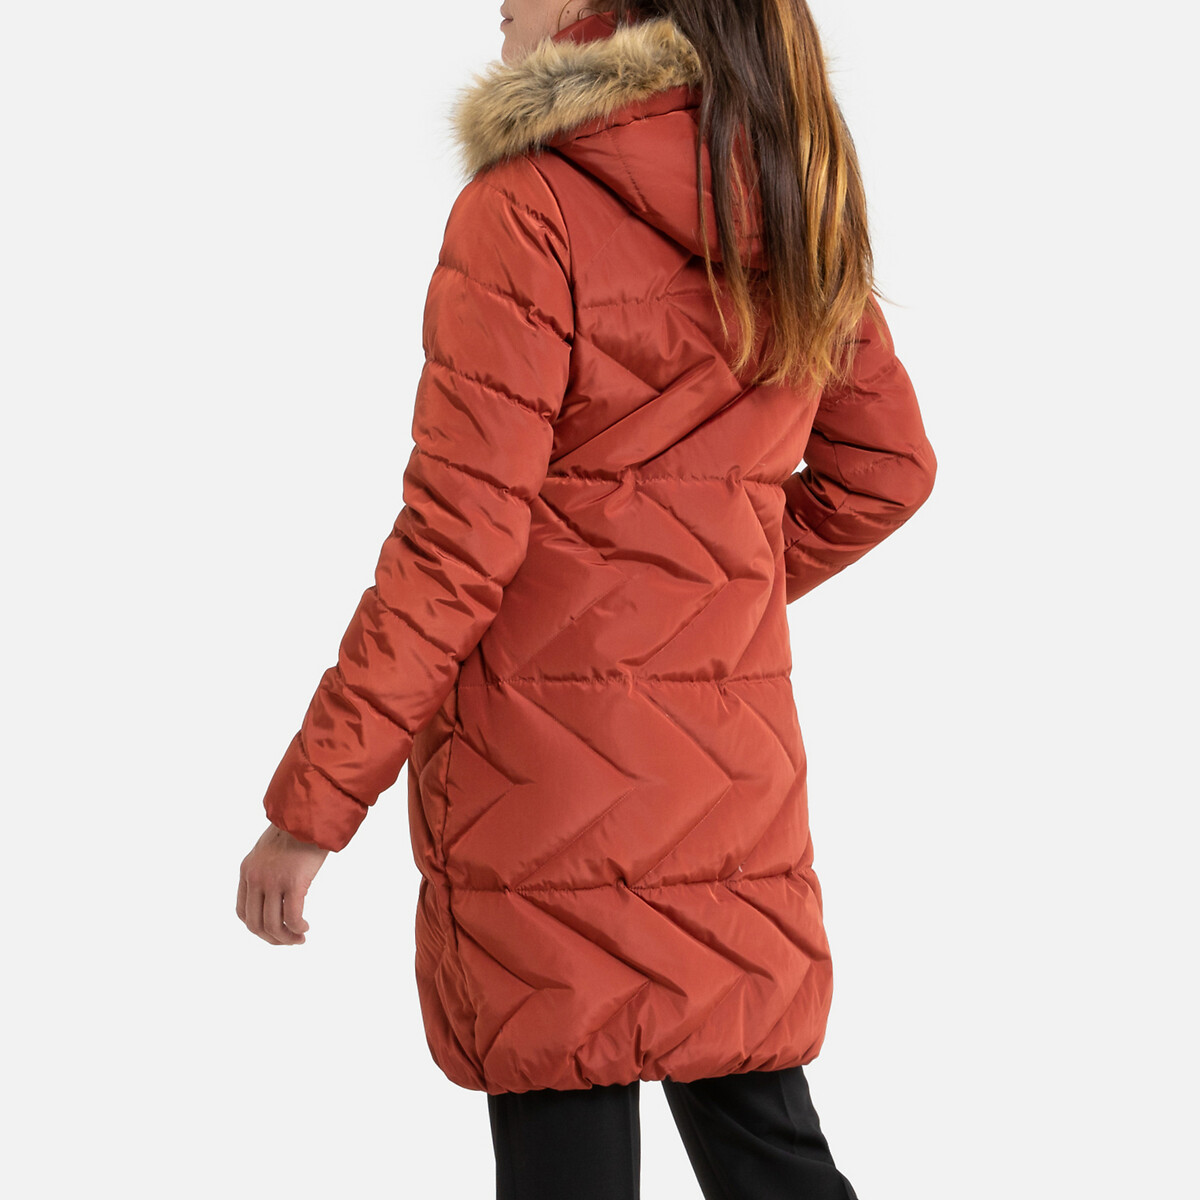 Куртка La Redoute Стеганая длинная с капюшоном зимняя модель 38 (FR) - 44 (RUS) оранжевый, размер 38 (FR) - 44 (RUS) Стеганая длинная с капюшоном зимняя модель 38 (FR) - 44 (RUS) оранжевый - фото 4